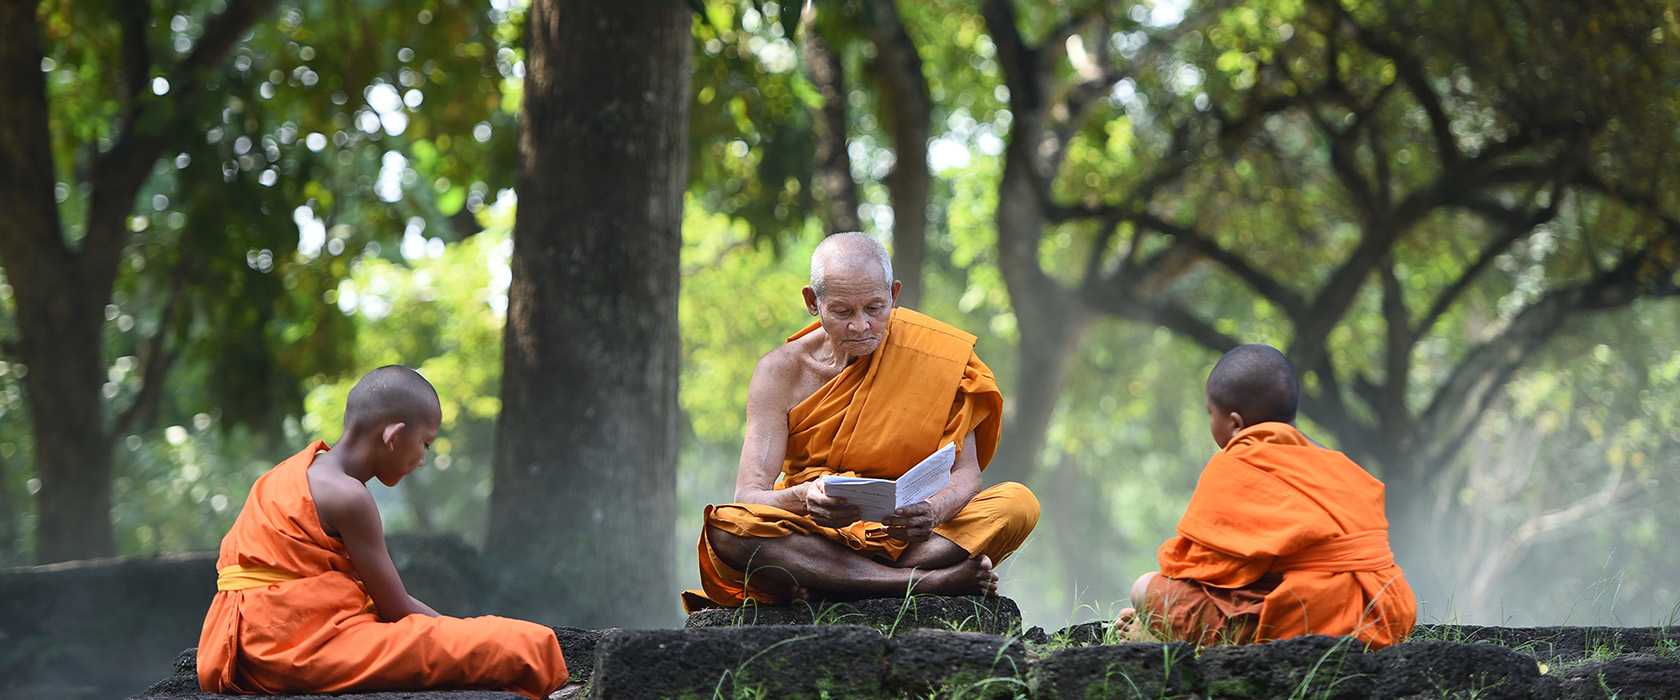 Дзэн-буддизм как нетрадиционный метод решения психологических проблем